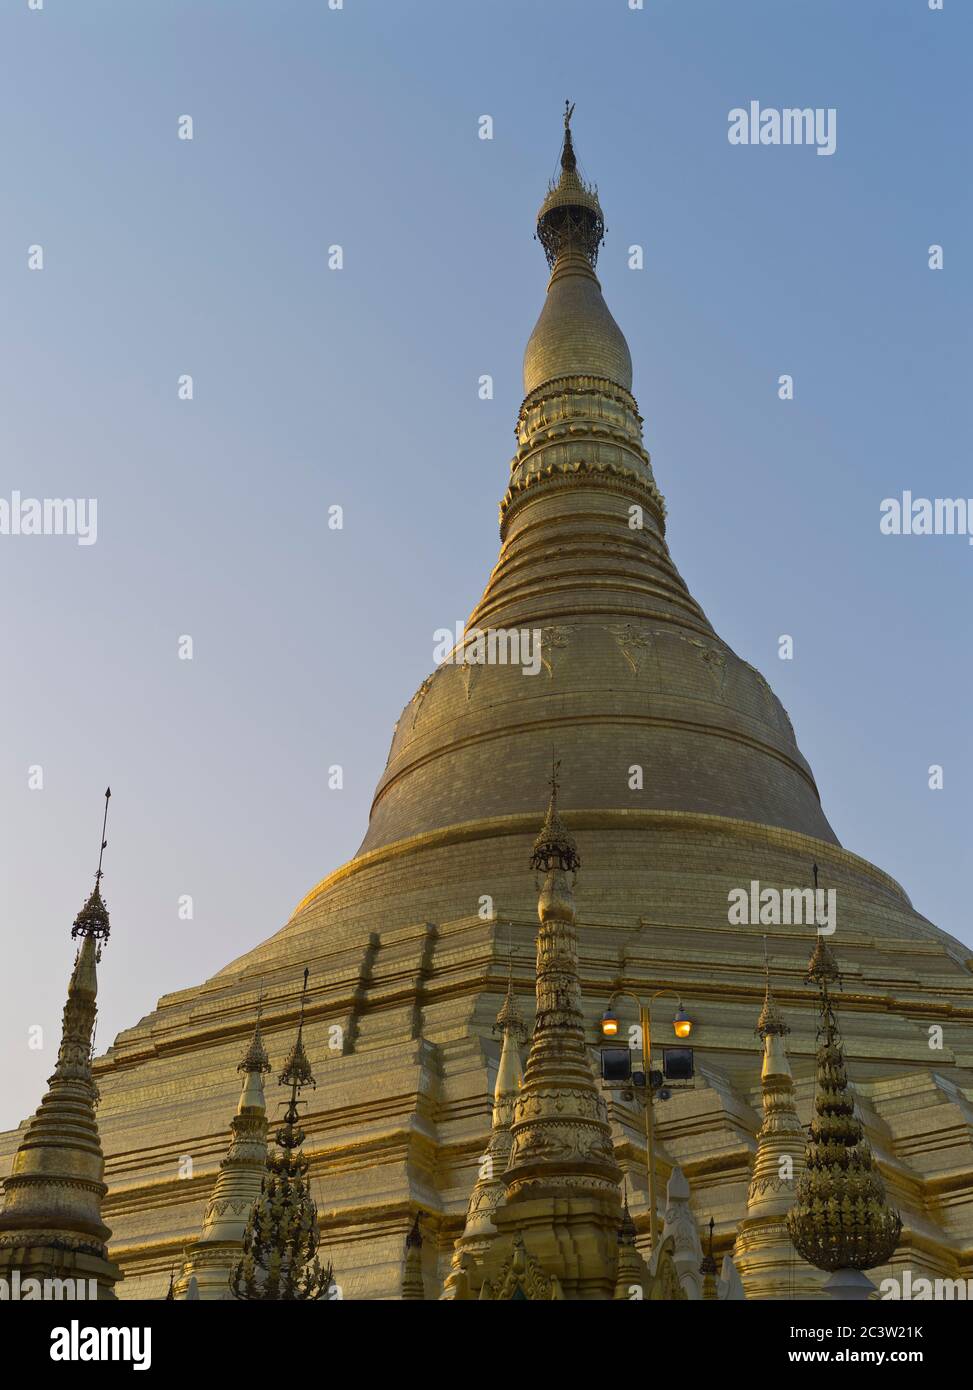 dh Shwedagon Pagoda tempio YANGON MYANMAR templi buddisti Grande Dagon Zedi Daw oro stupida birmano foglia d'oro Foto Stock